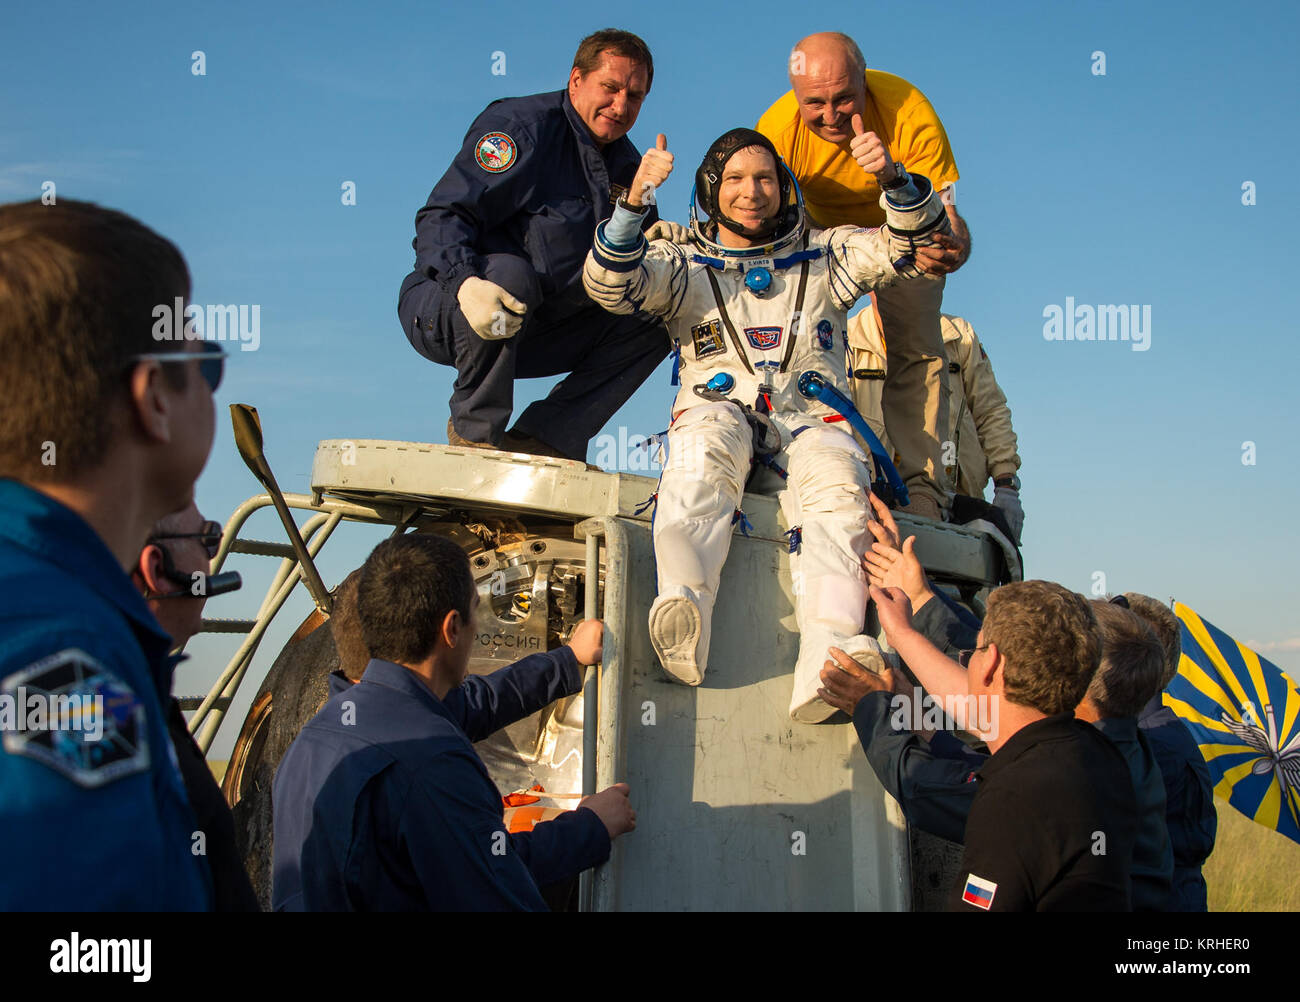 Expedition 43 Commander Terry Virts der NASA aus der Sojus TMA-15M Sonde geholfen, nur wenige Minuten nachdem er und kosmonaut Anton Shkaplerov der russischen Föderalen Raumfahrtagentur (Roskosmos), Mitte und italienische Astronaut Samantha Cristoforetti von der Europäischen Weltraumorganisation (ESA) in einer abgelegenen Gegend in der Nähe der Stadt Zhezkazgan, Kasachstan am Donnerstag, den 11. Juni 2015 gelandet. Virts, Shkaplerov und Cristoforetti kehren nach mehr als sechs Monaten die Internationale Raumstation, wo sie als Mitglieder der Expedition 42 und 43 Besatzungsmitglieder an Bord serviert. Photo Credit: (NASA/Bill Ingalls) Expedition 43 Stockfoto